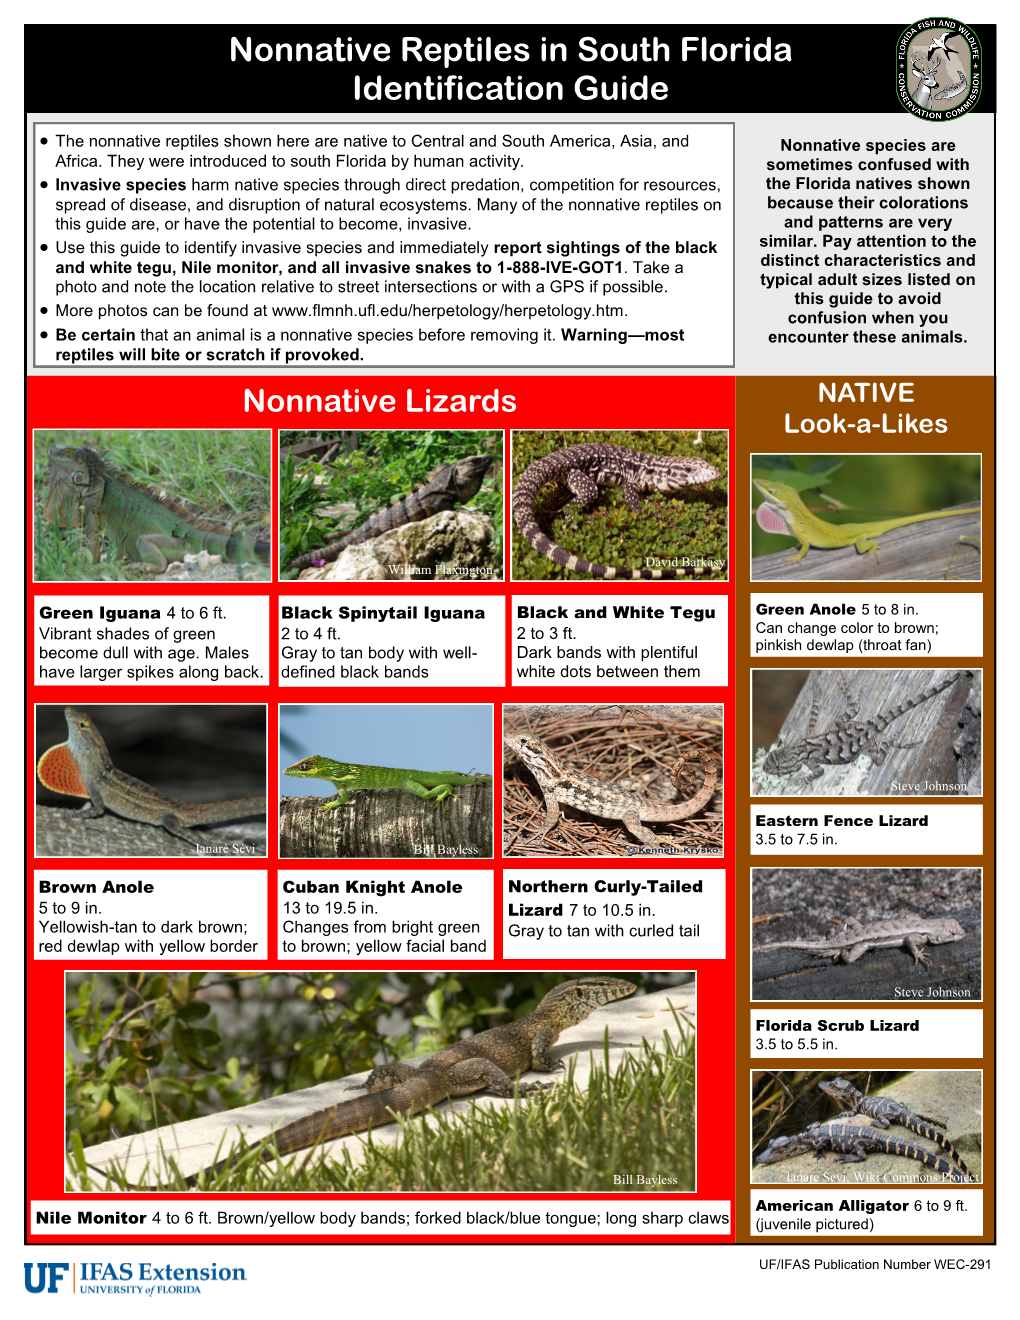 Nonnative Reptiles in South Florida Identification Guide